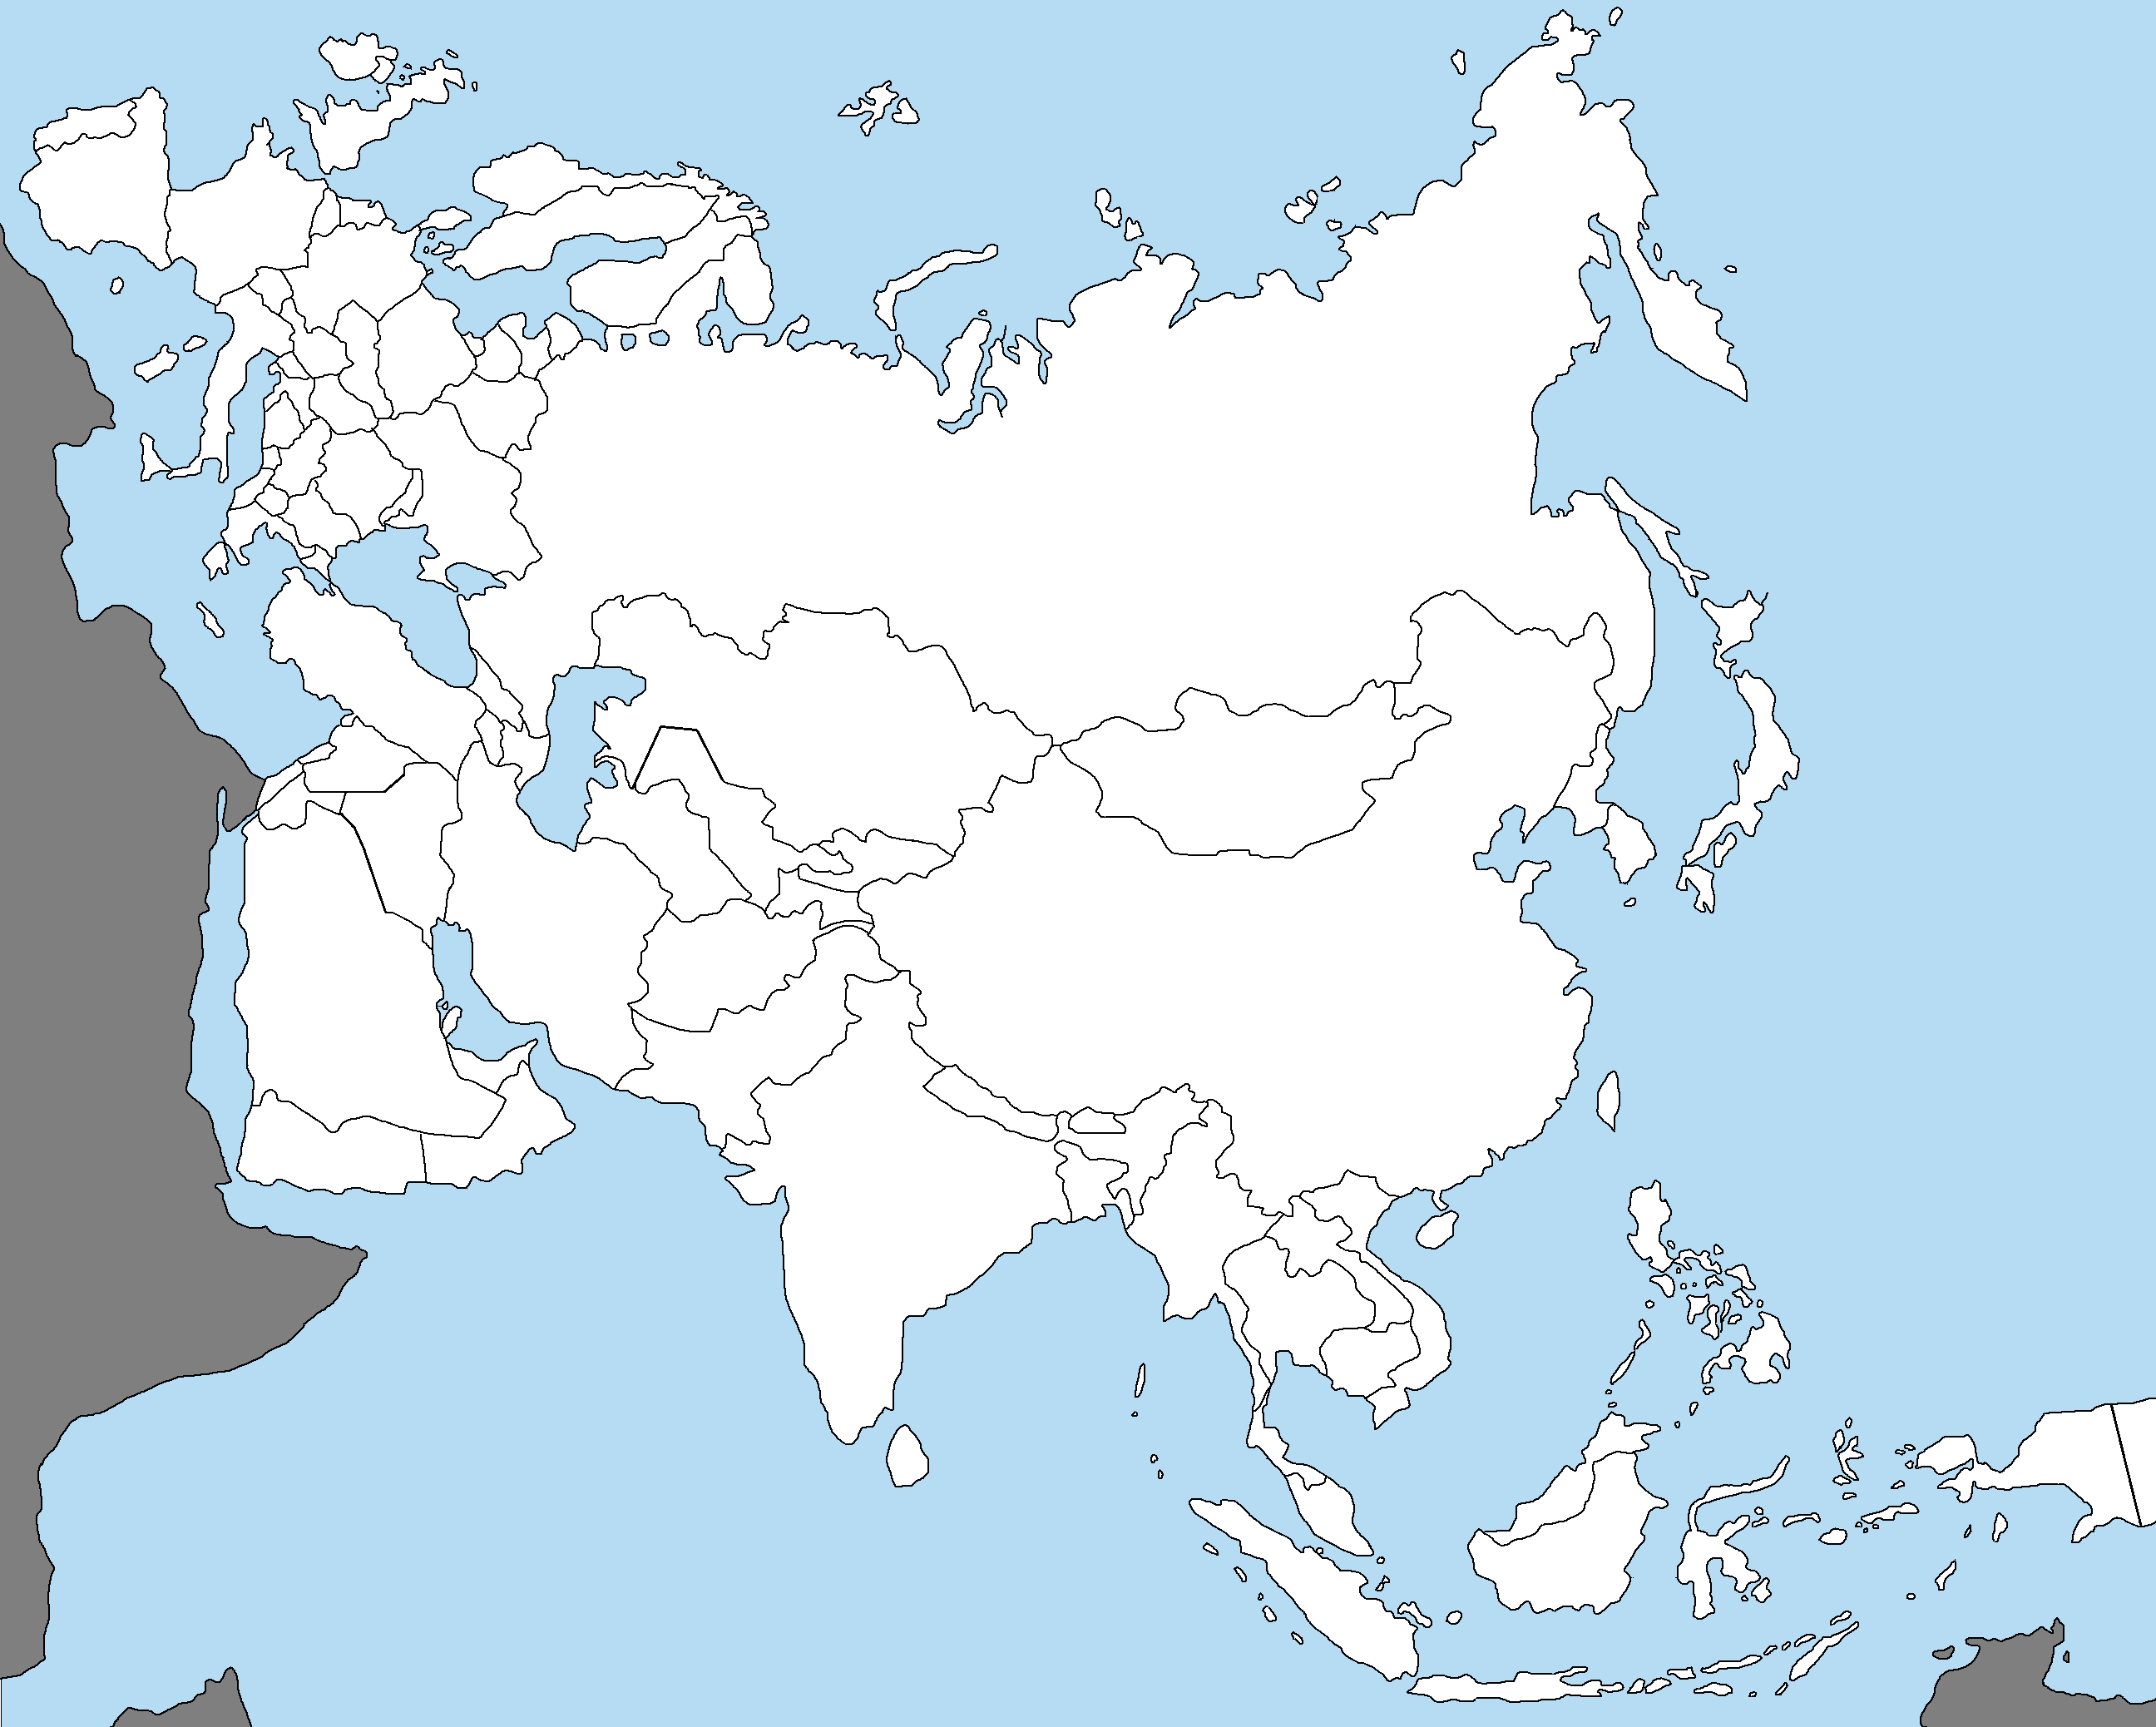 White asia. Карта Евразии пустая. Карта Азии 1939 года для маппинга. Карта Азии для маппинга. Политическая карта Евразии контурная с границами.